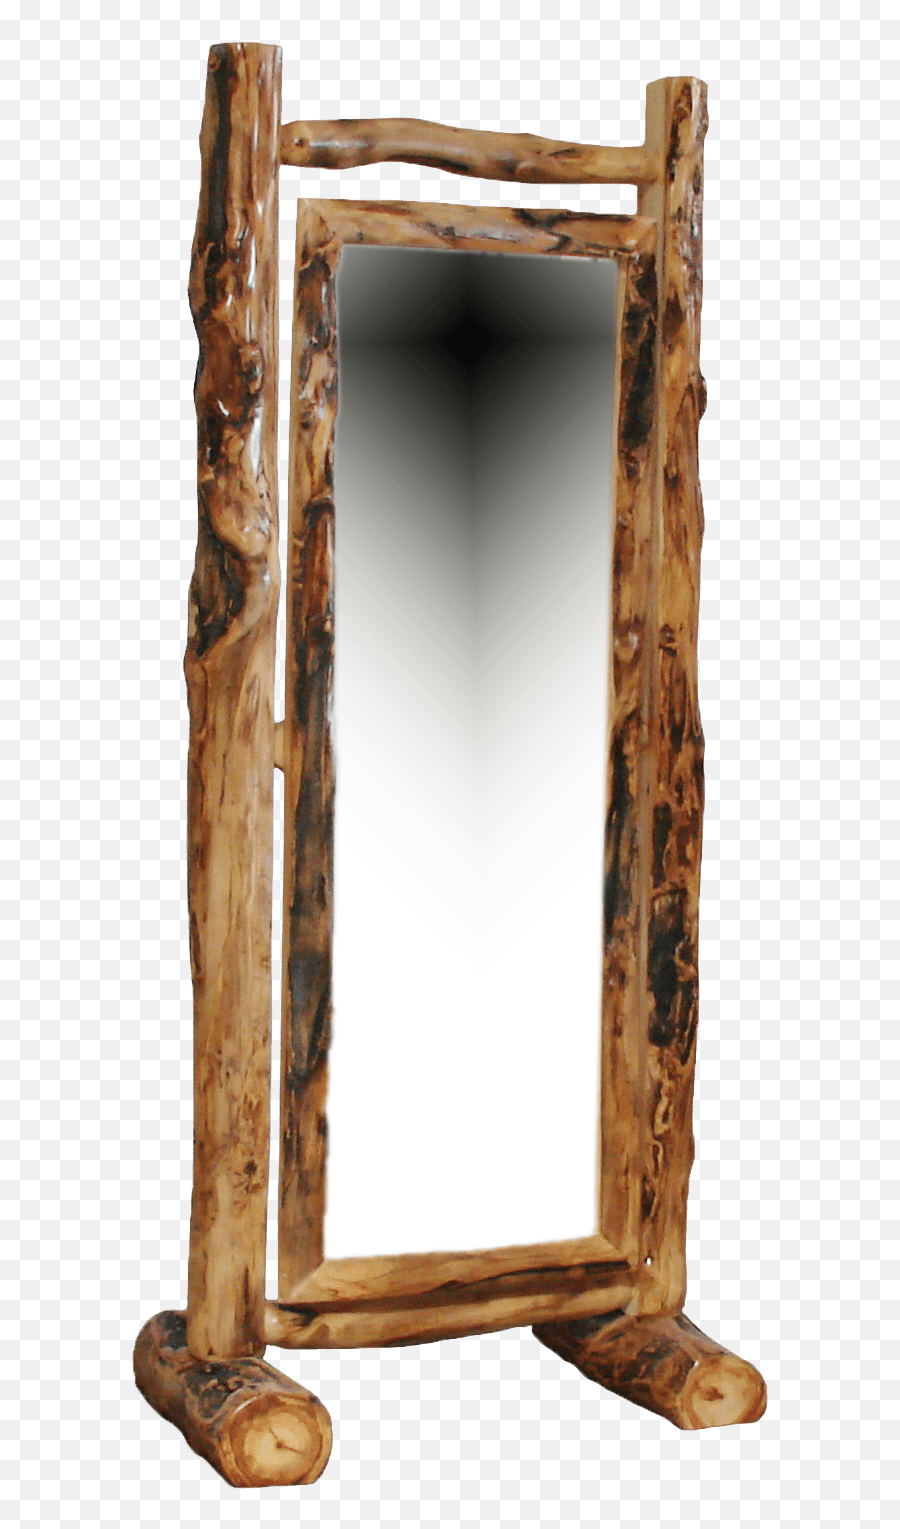 Old Wooden Frame Png - Marcos De Espejo En Madera Rustica,Wooden Frame Png